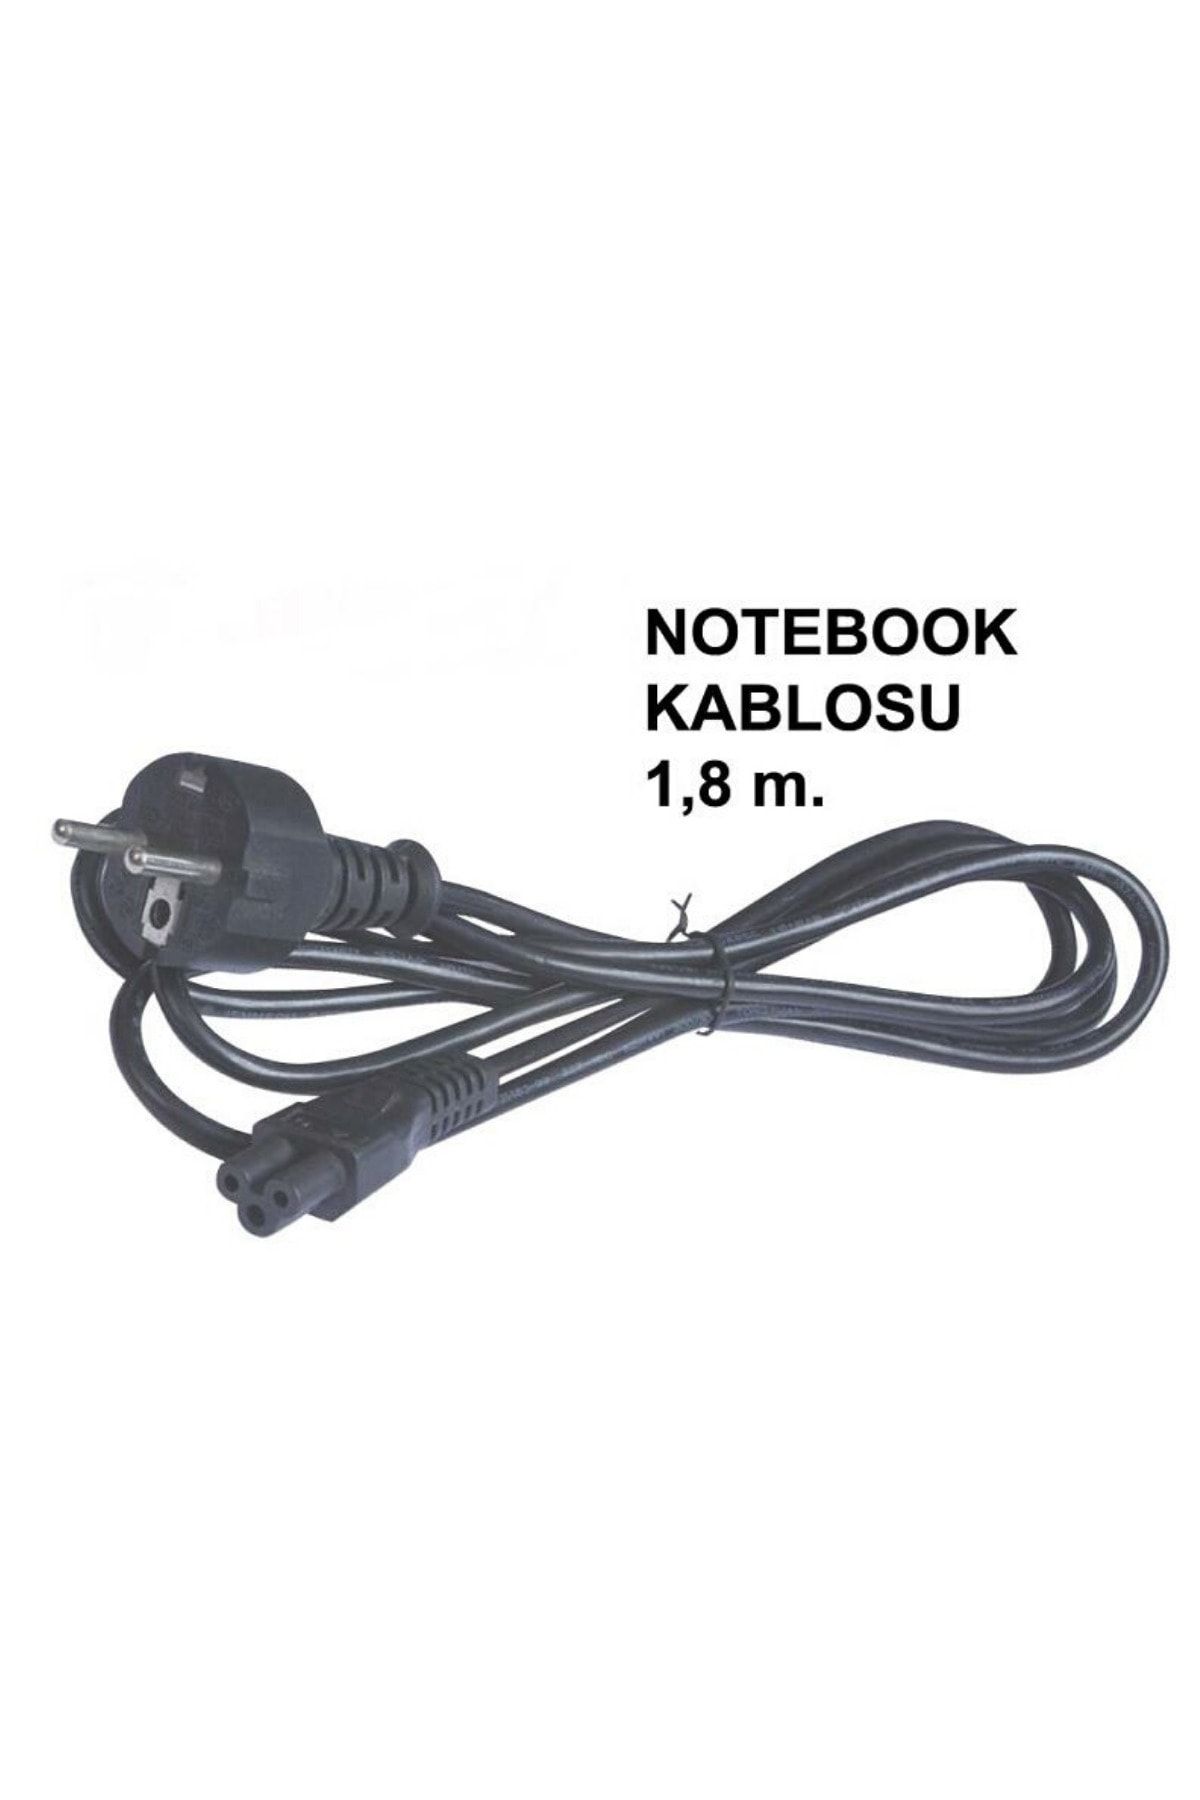 Anex Notebook Power Kablo 1.8 Mt